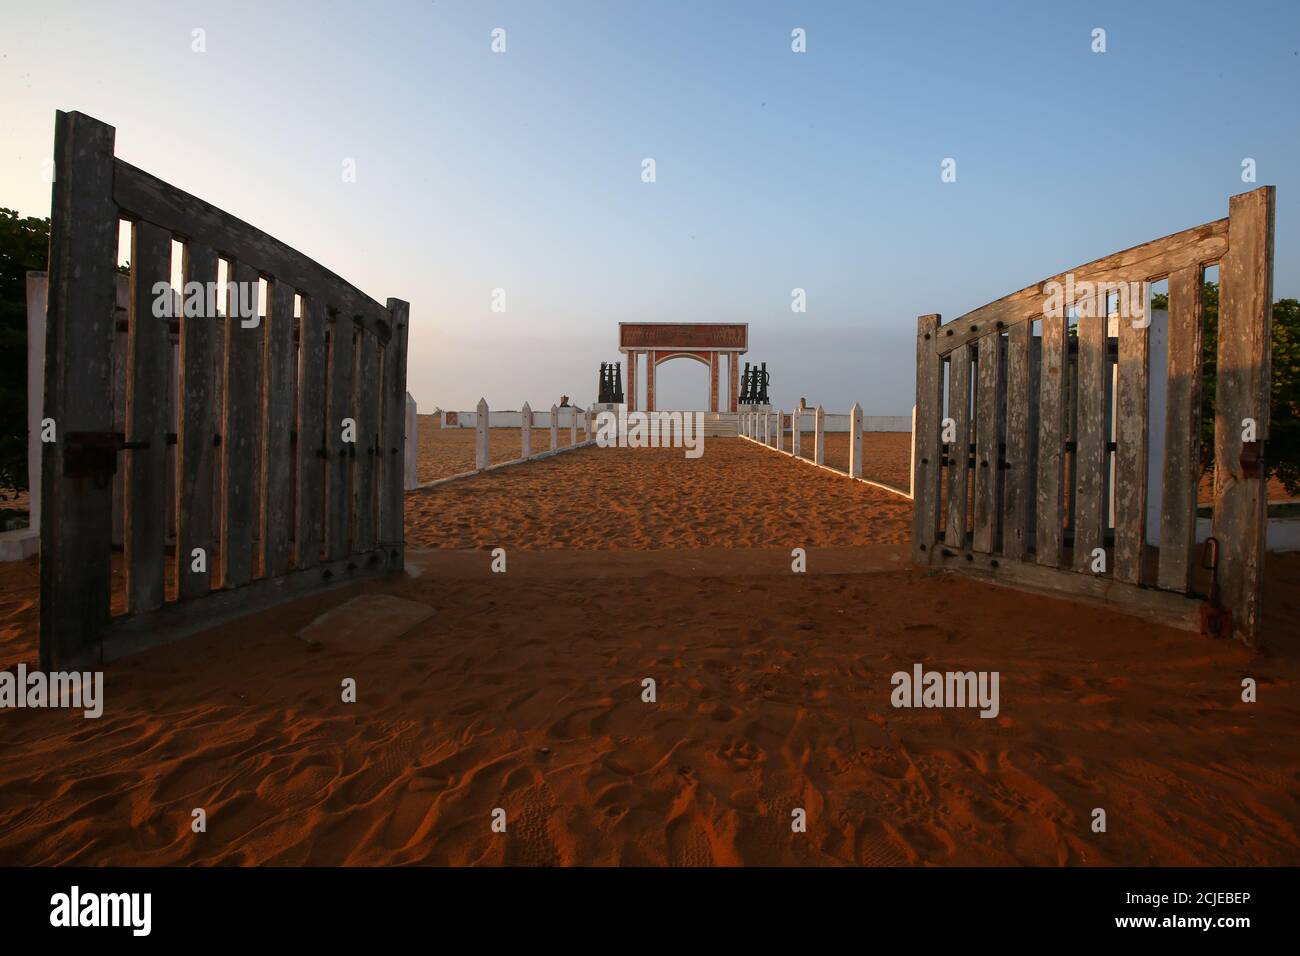 Le porte aperte sono viste prima di un monumento nel sito del 'punto di non ritorno' dove gli schiavi sono stati caricati sulle navi nello storico porto degli schiavi di Ouidah, Benin 17 luglio 2019. Foto scattata il 17 luglio 2019. REUTERS/Afolabi Sotunde Foto Stock